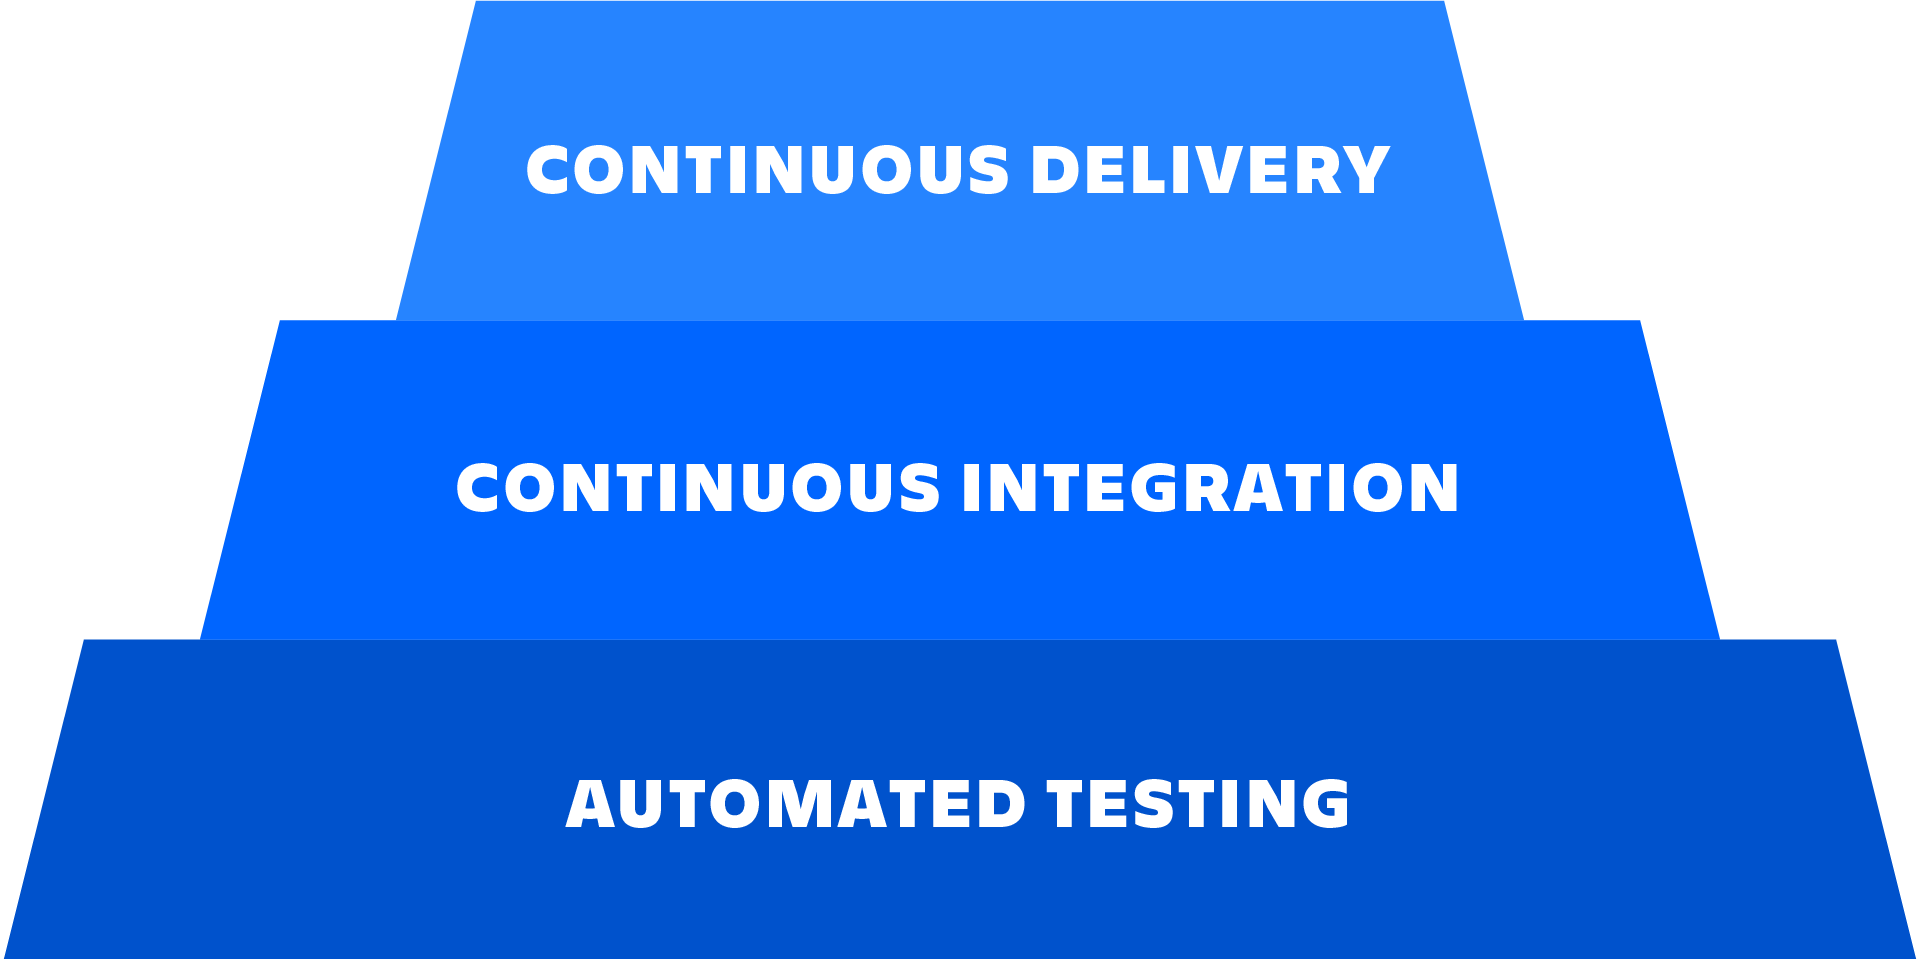 Een diagram dat de relatie beschrijft tussen geautomatiseerd testen, continue integratie en continue levering.